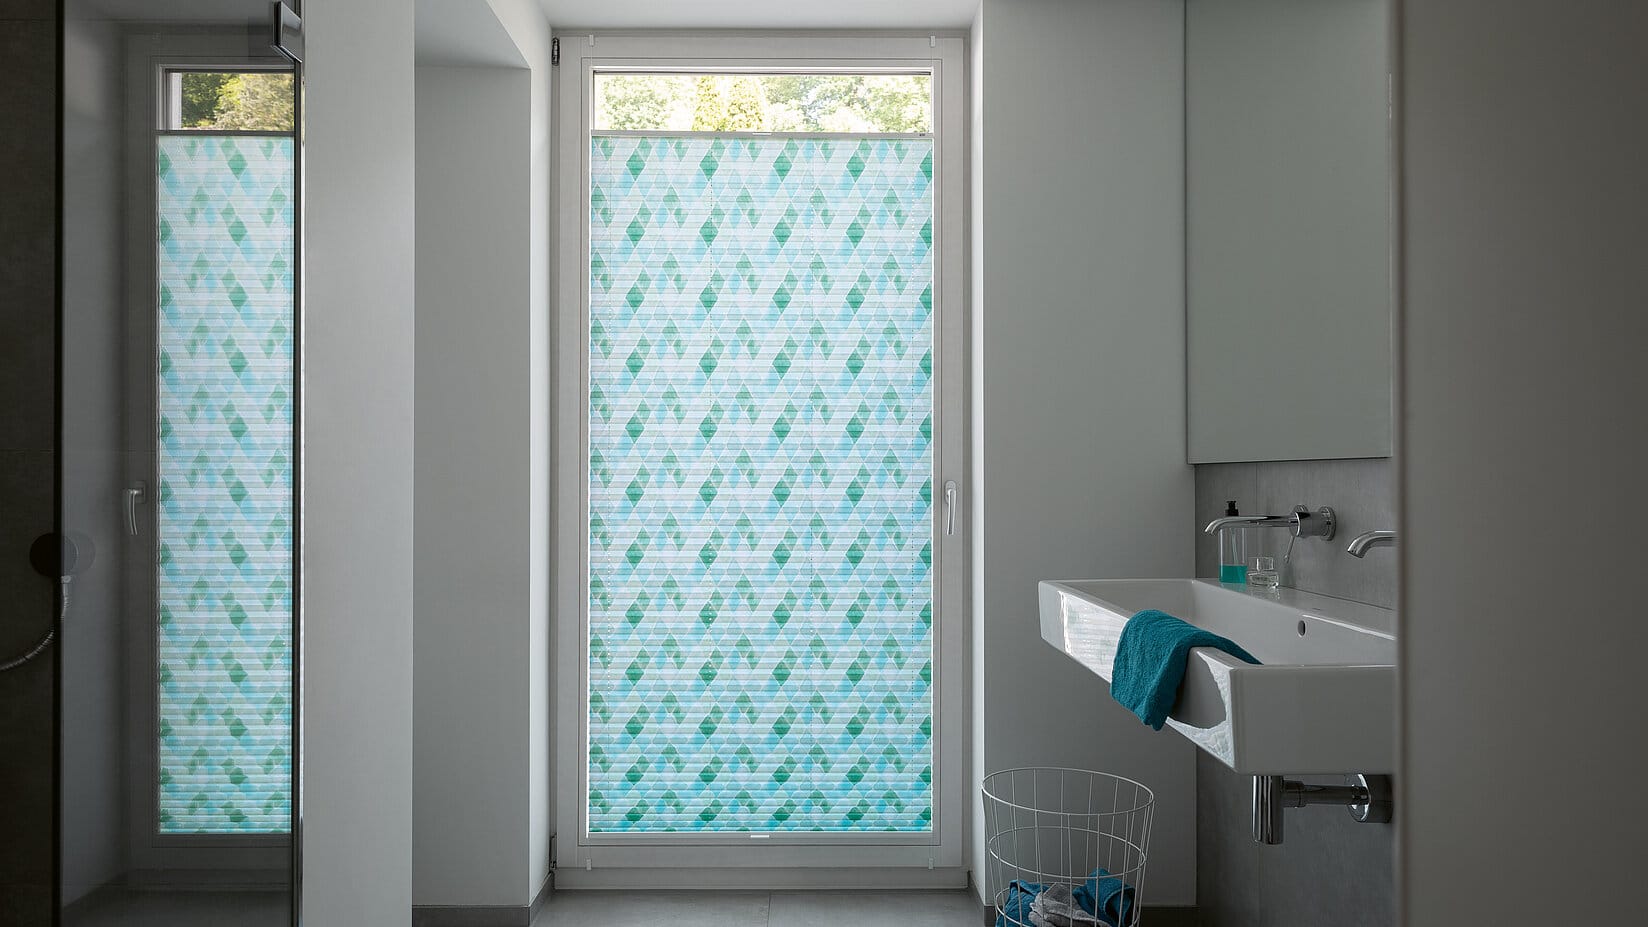 Badezimmer mit bodentiefem Fenster und einem Plissee in Aquarelloptik in verschiedenen Blautönen.